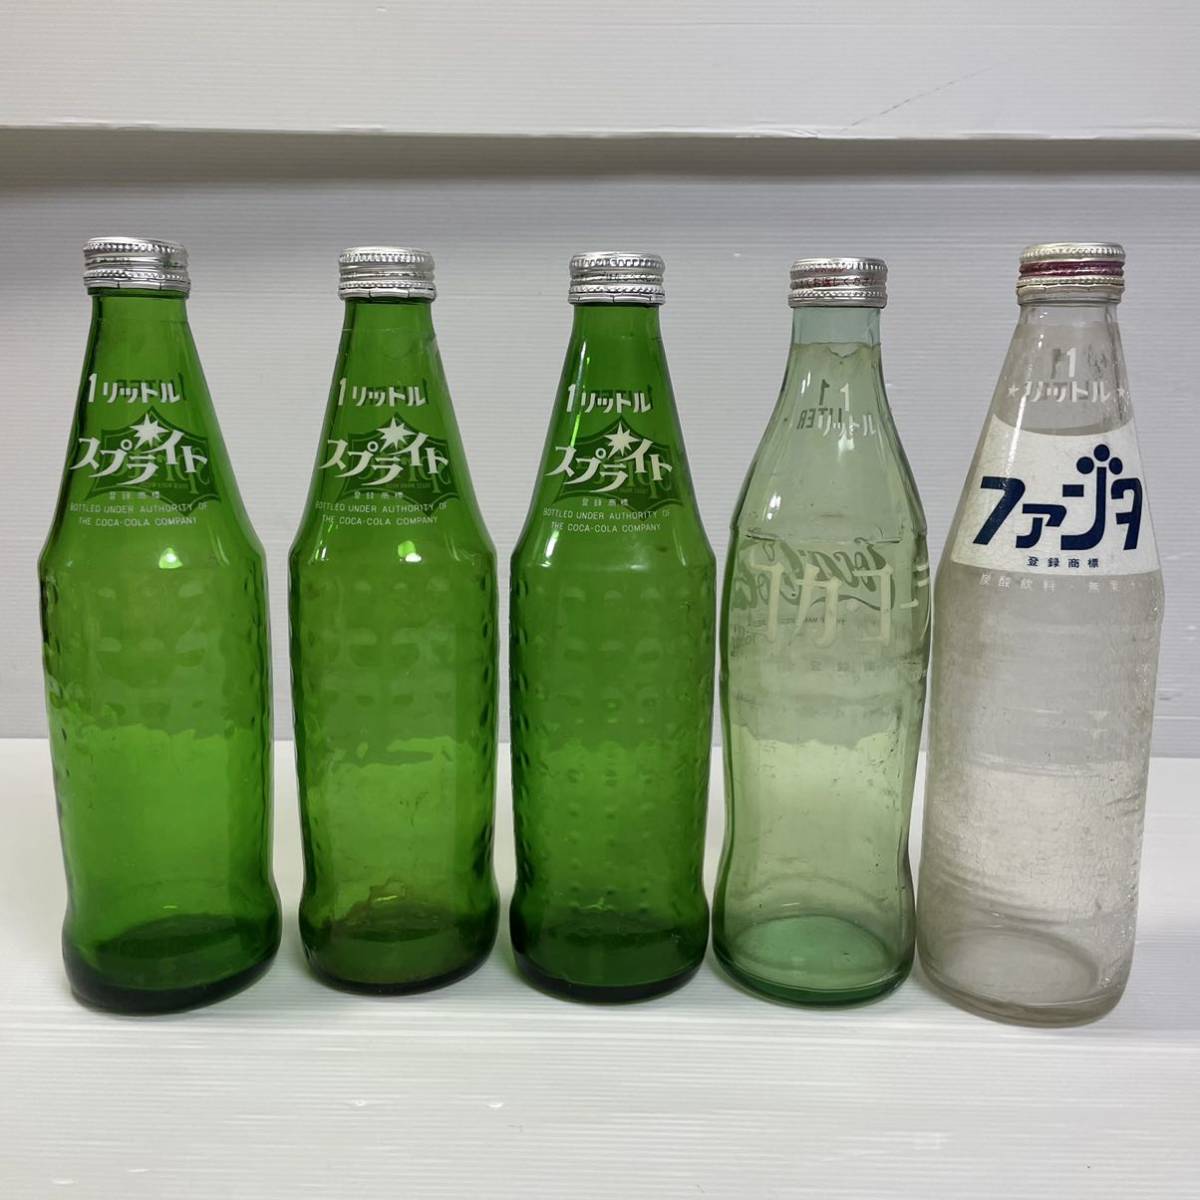 限定特価 コカ コーラ ファンタ セブンアップ瓶 昭和レトロ雑貨 ヴィンテージ雑貨